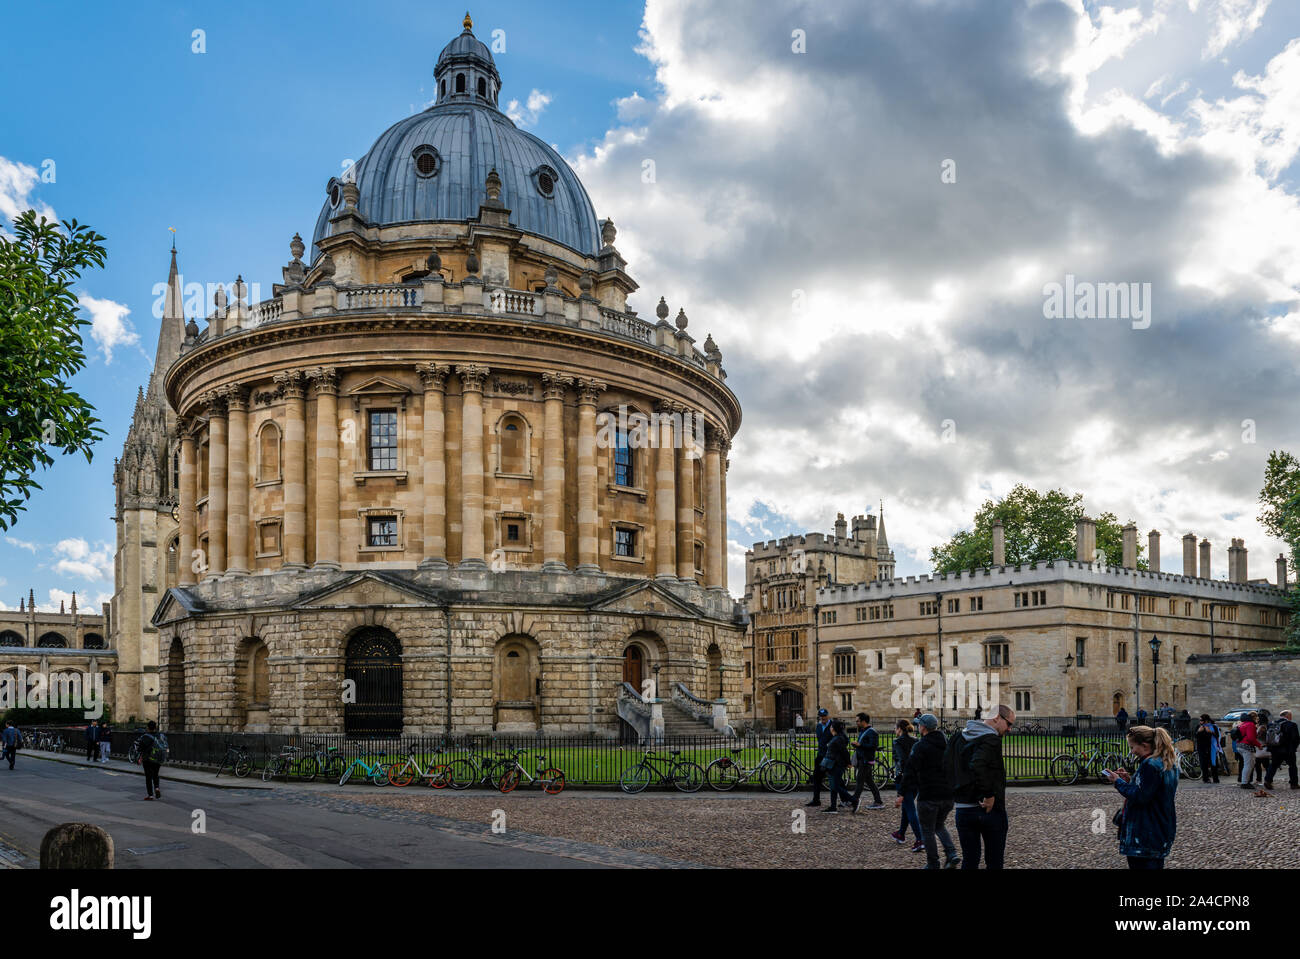 Vue sur la caméra Radcliffe, à Oxford, Royaume-Uni. Il a été construit en 1749 pour abriter la bibliothèque scientifique Radcliffe. La bibliothèque Bodleian est sur la droite. Banque D'Images